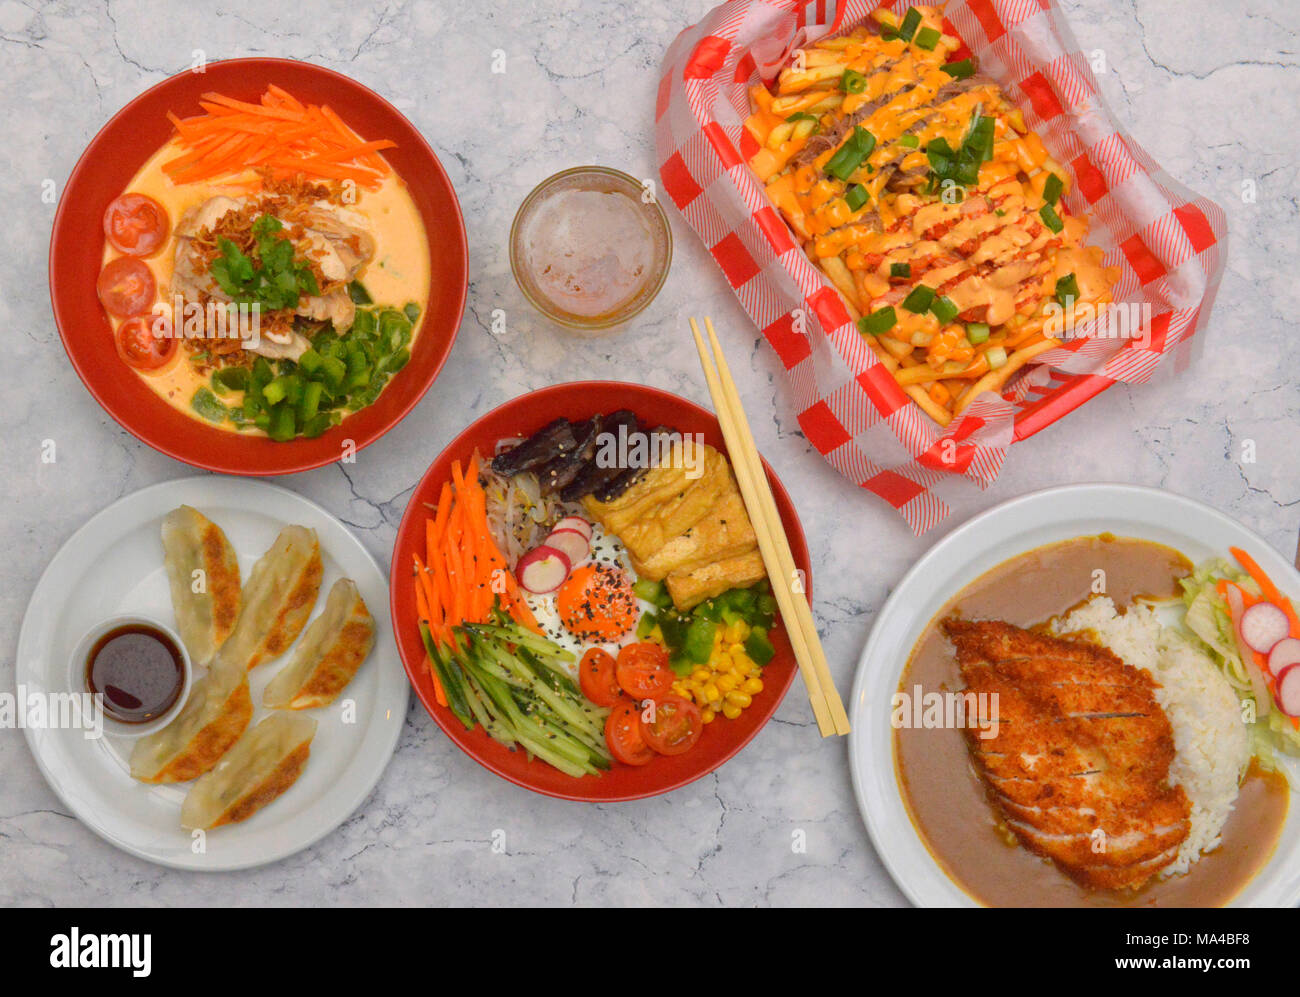 Una selezione di cibo Coreano incluso il tofu & bimbimbap funghi, carni bovine kimchi, pollo al curry rosso, gnocchi di vegetali, Croccante di pollo panko katsu curry. Foto Stock